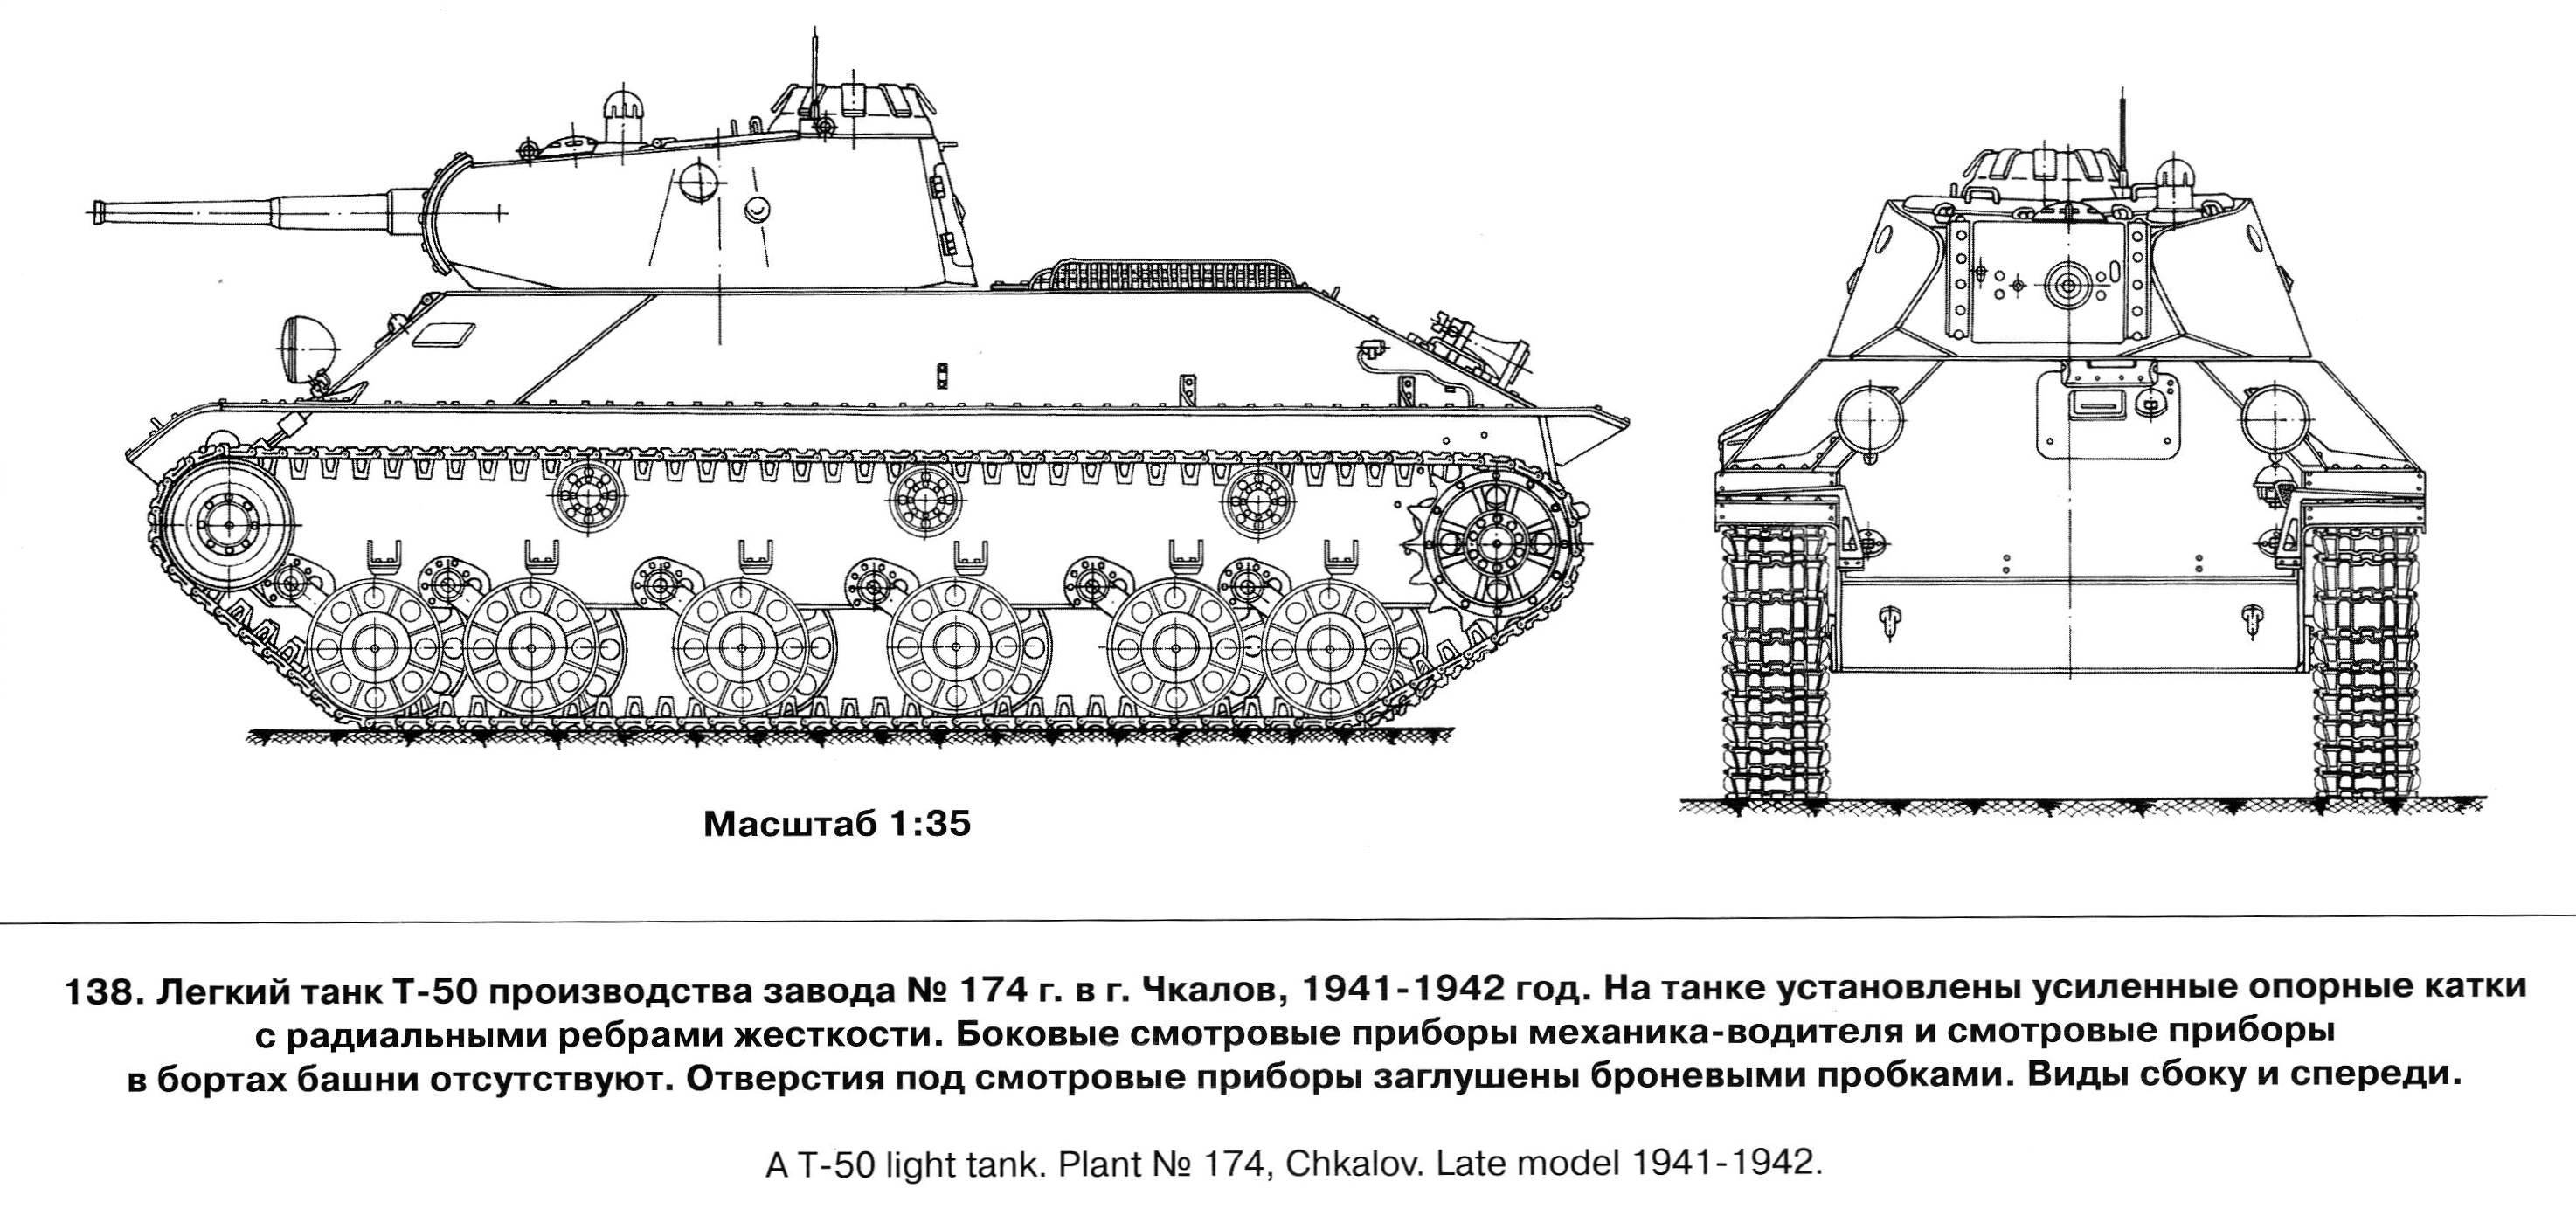 585,танк под обозначением – объект 279: раскрываем суть